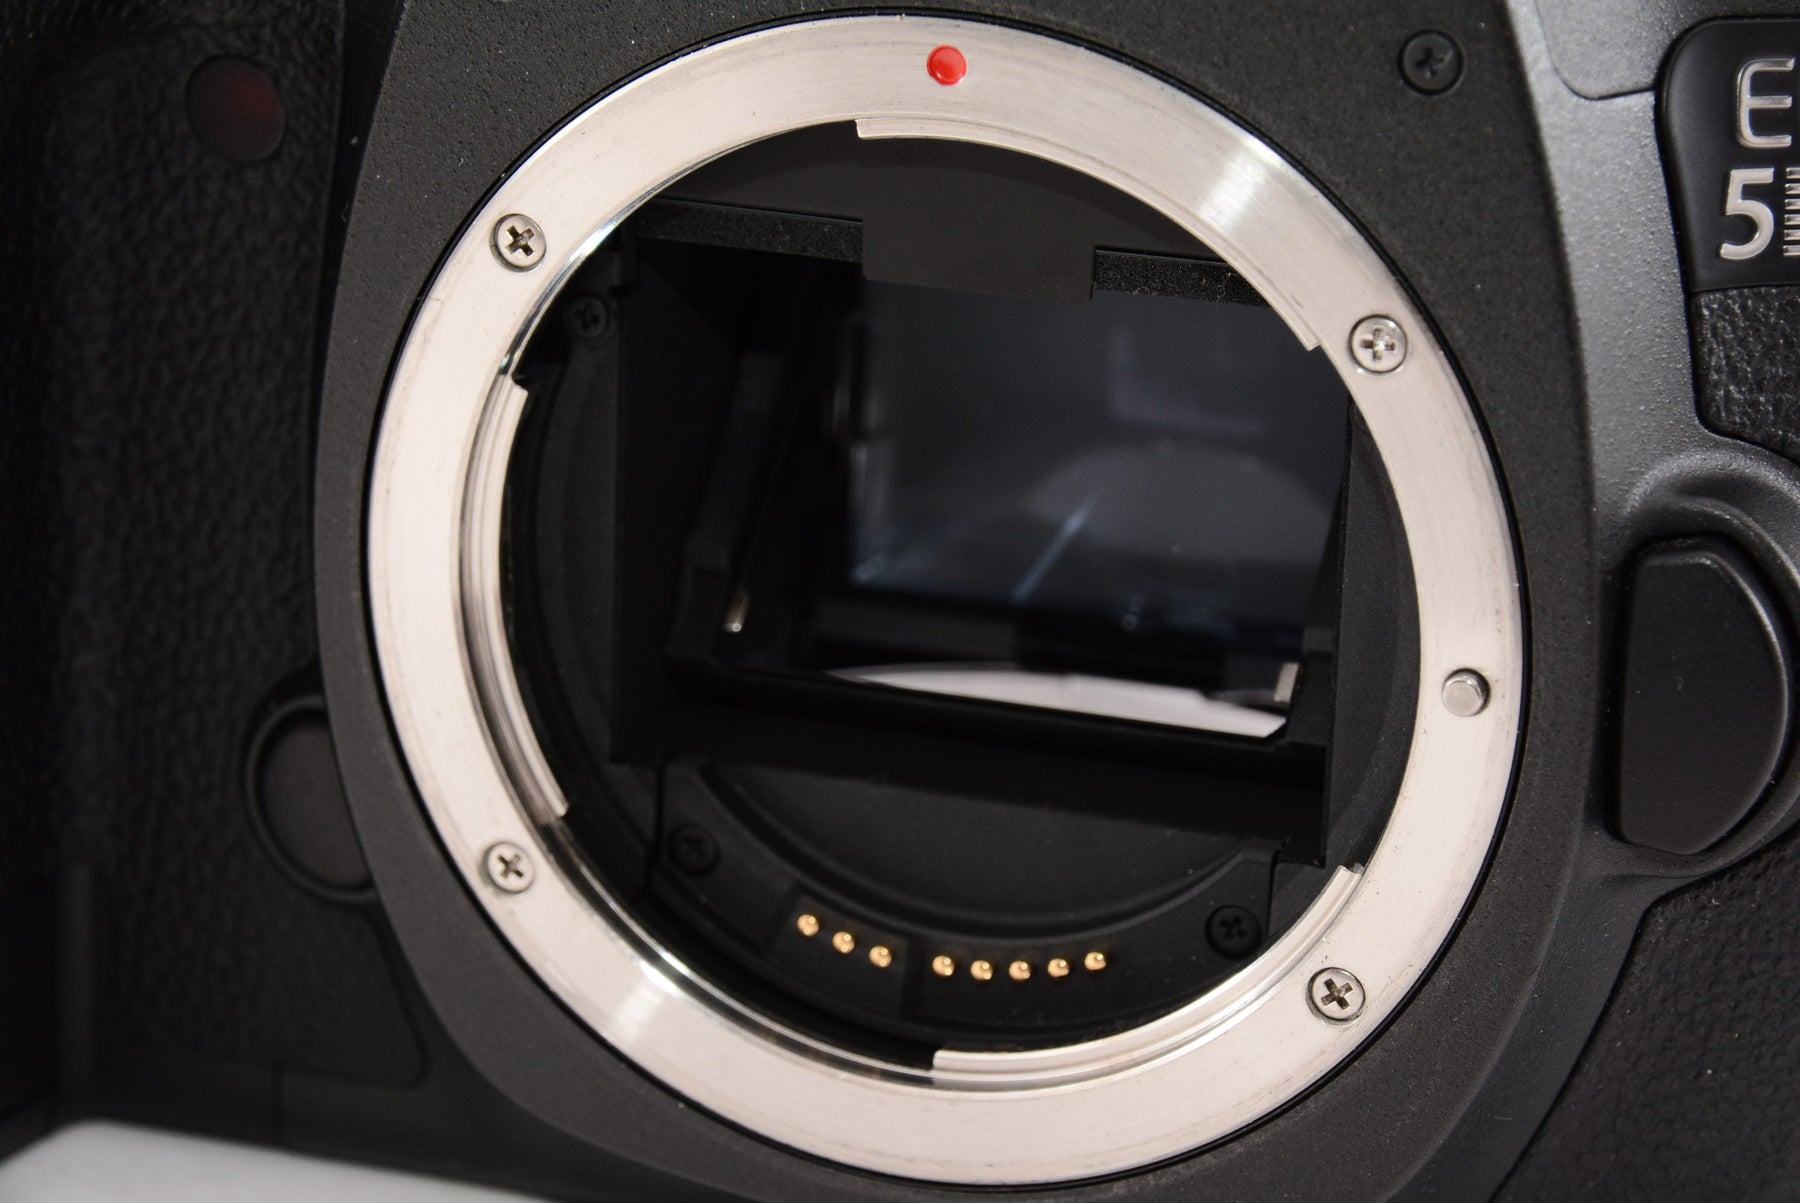 Canon デジタル一眼レフカメラ EOS 5Ds R ボディー EOS5DSR - デジタル